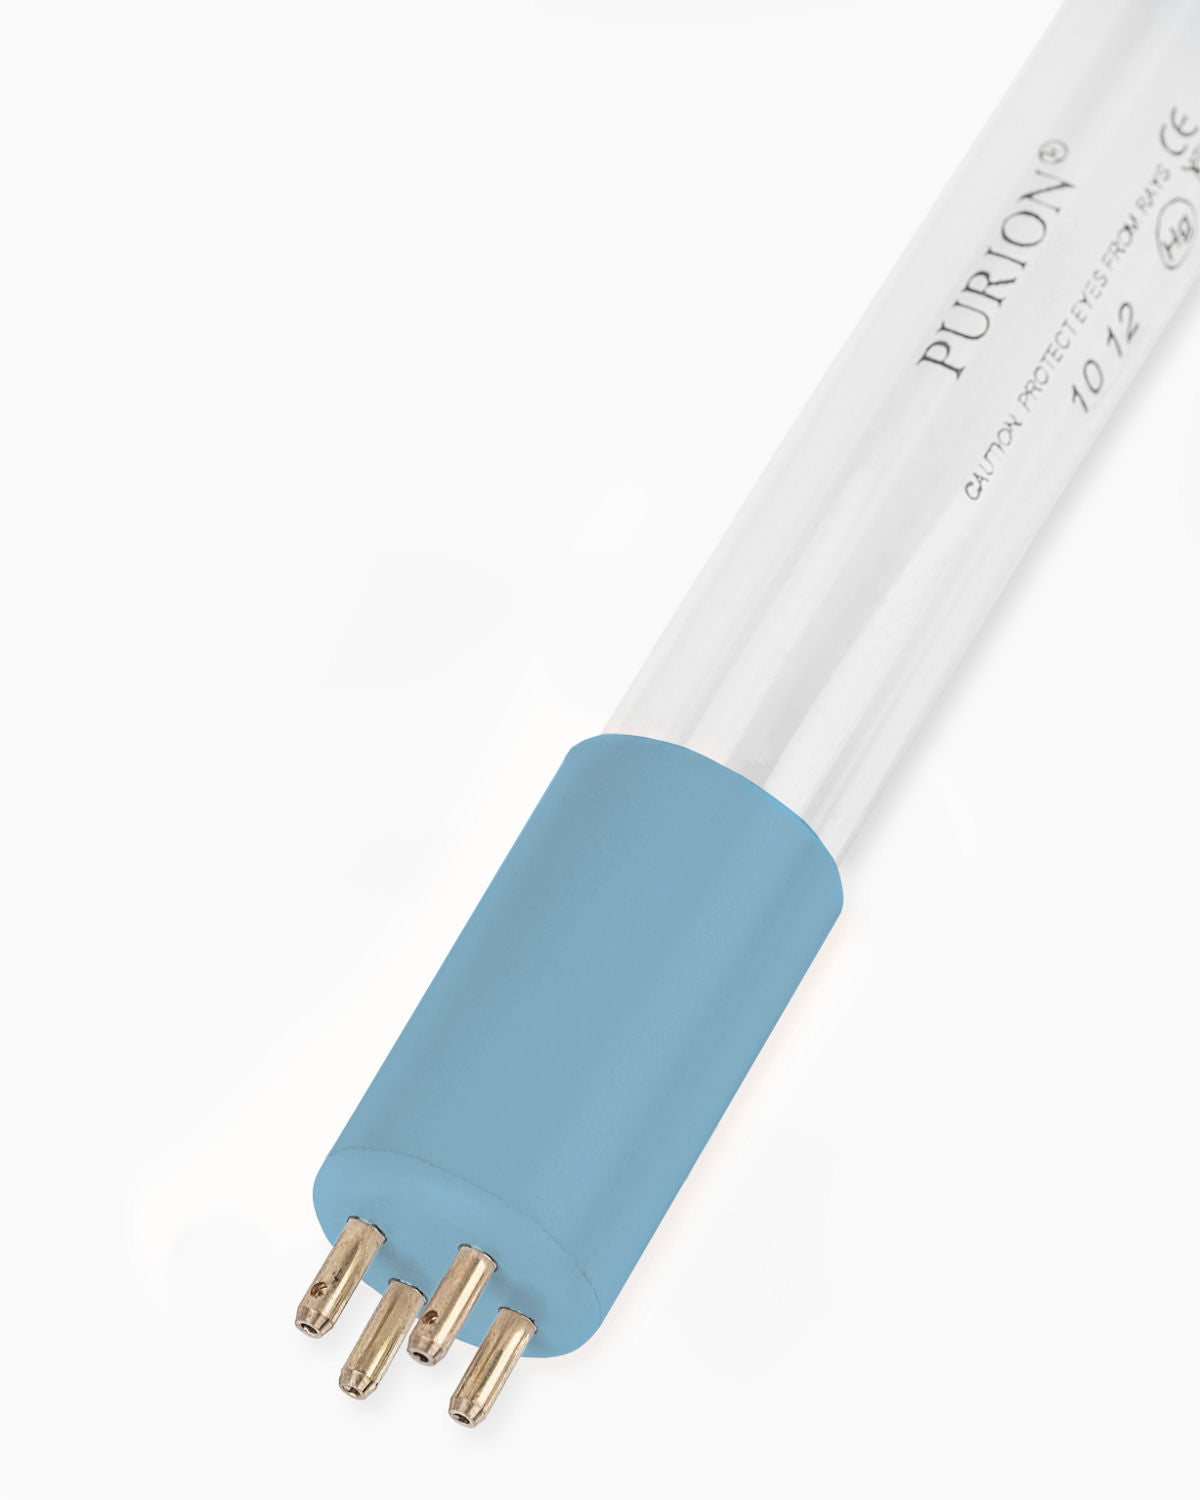 Eine UV-C-Blaulichtröhre der PURION GmbH auf weißem Hintergrund.